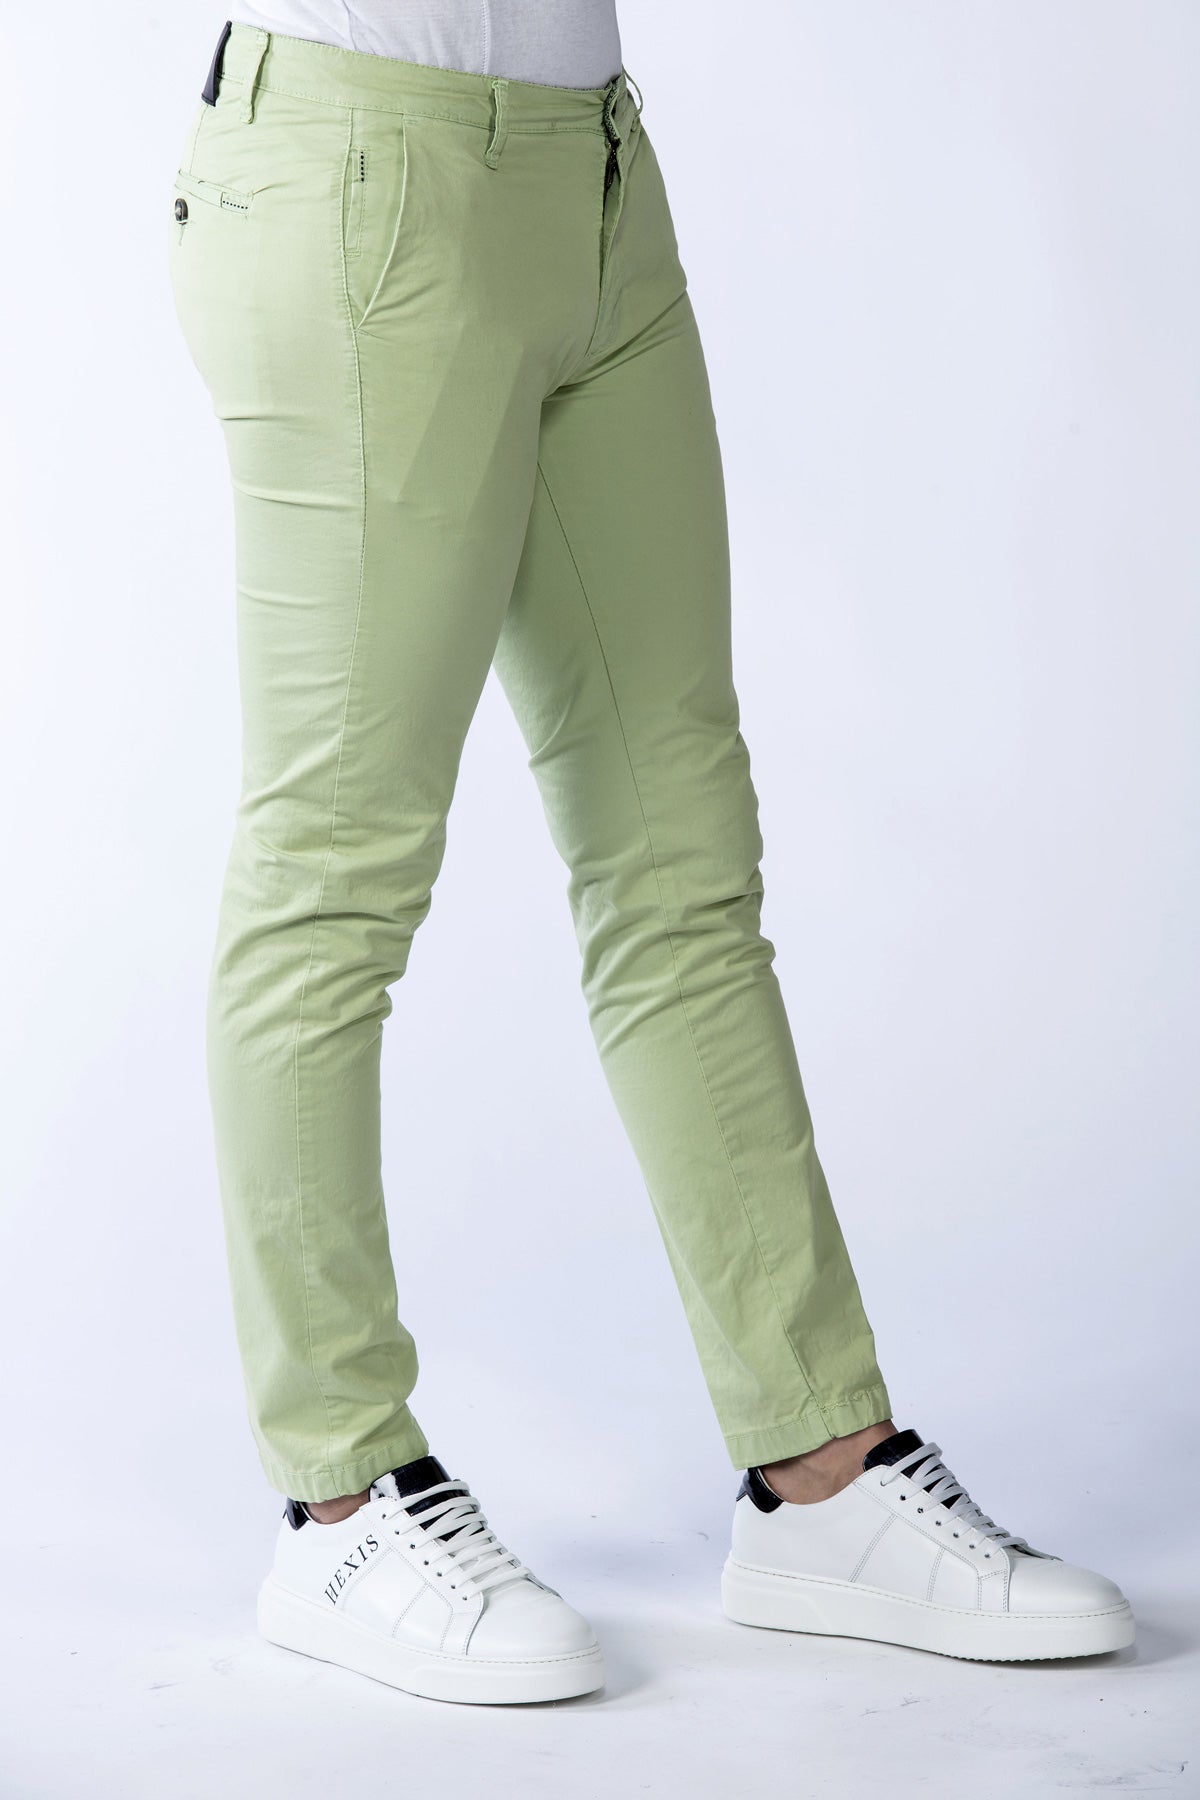 Pánské strečové kalhoty Bakerloo v jablečně zelené barvě